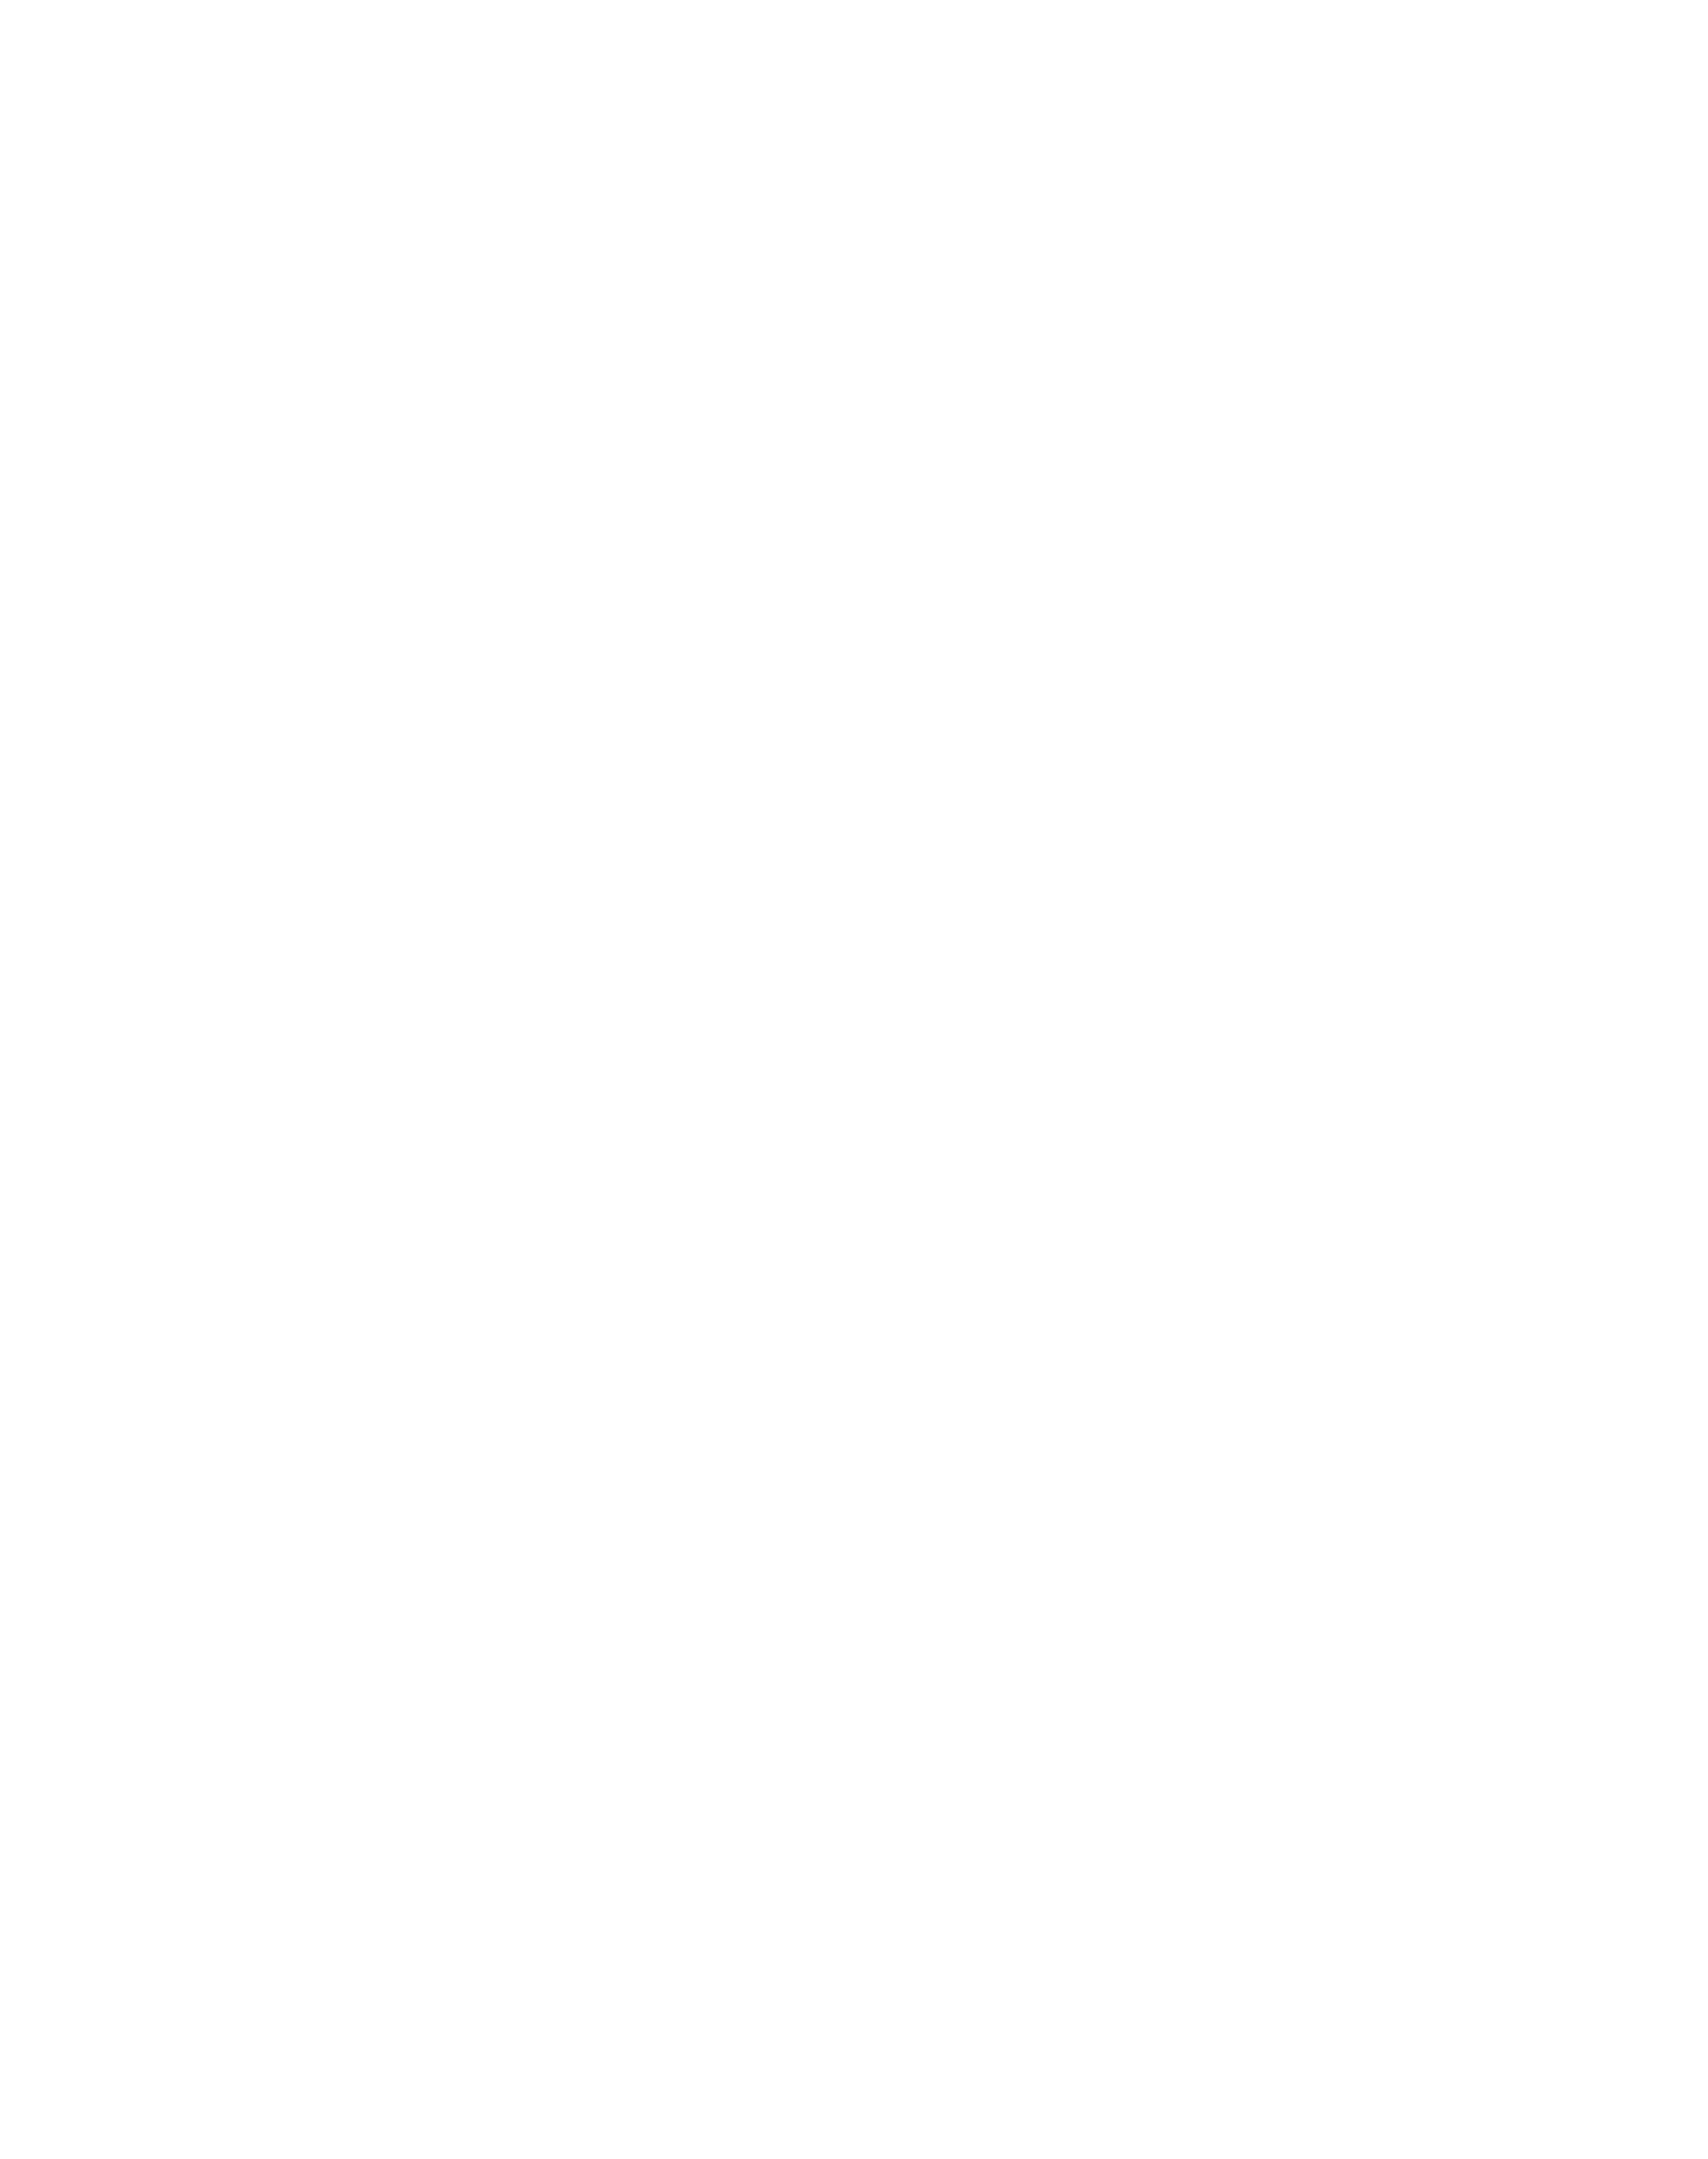 Safeharbor Christian Church